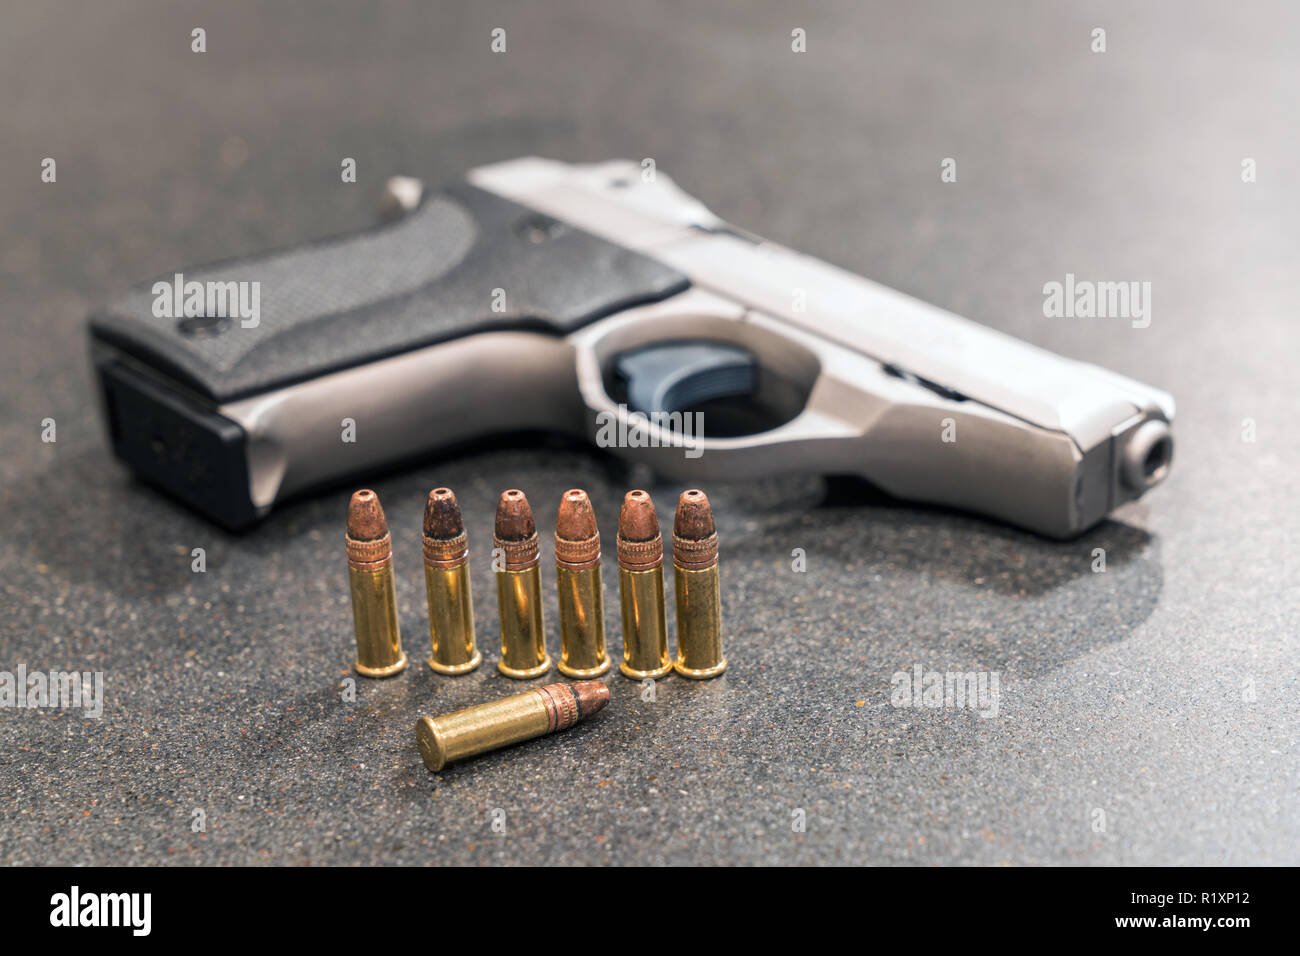 Kugeln und Pistole auf Schwarz Tabelle Stockfoto